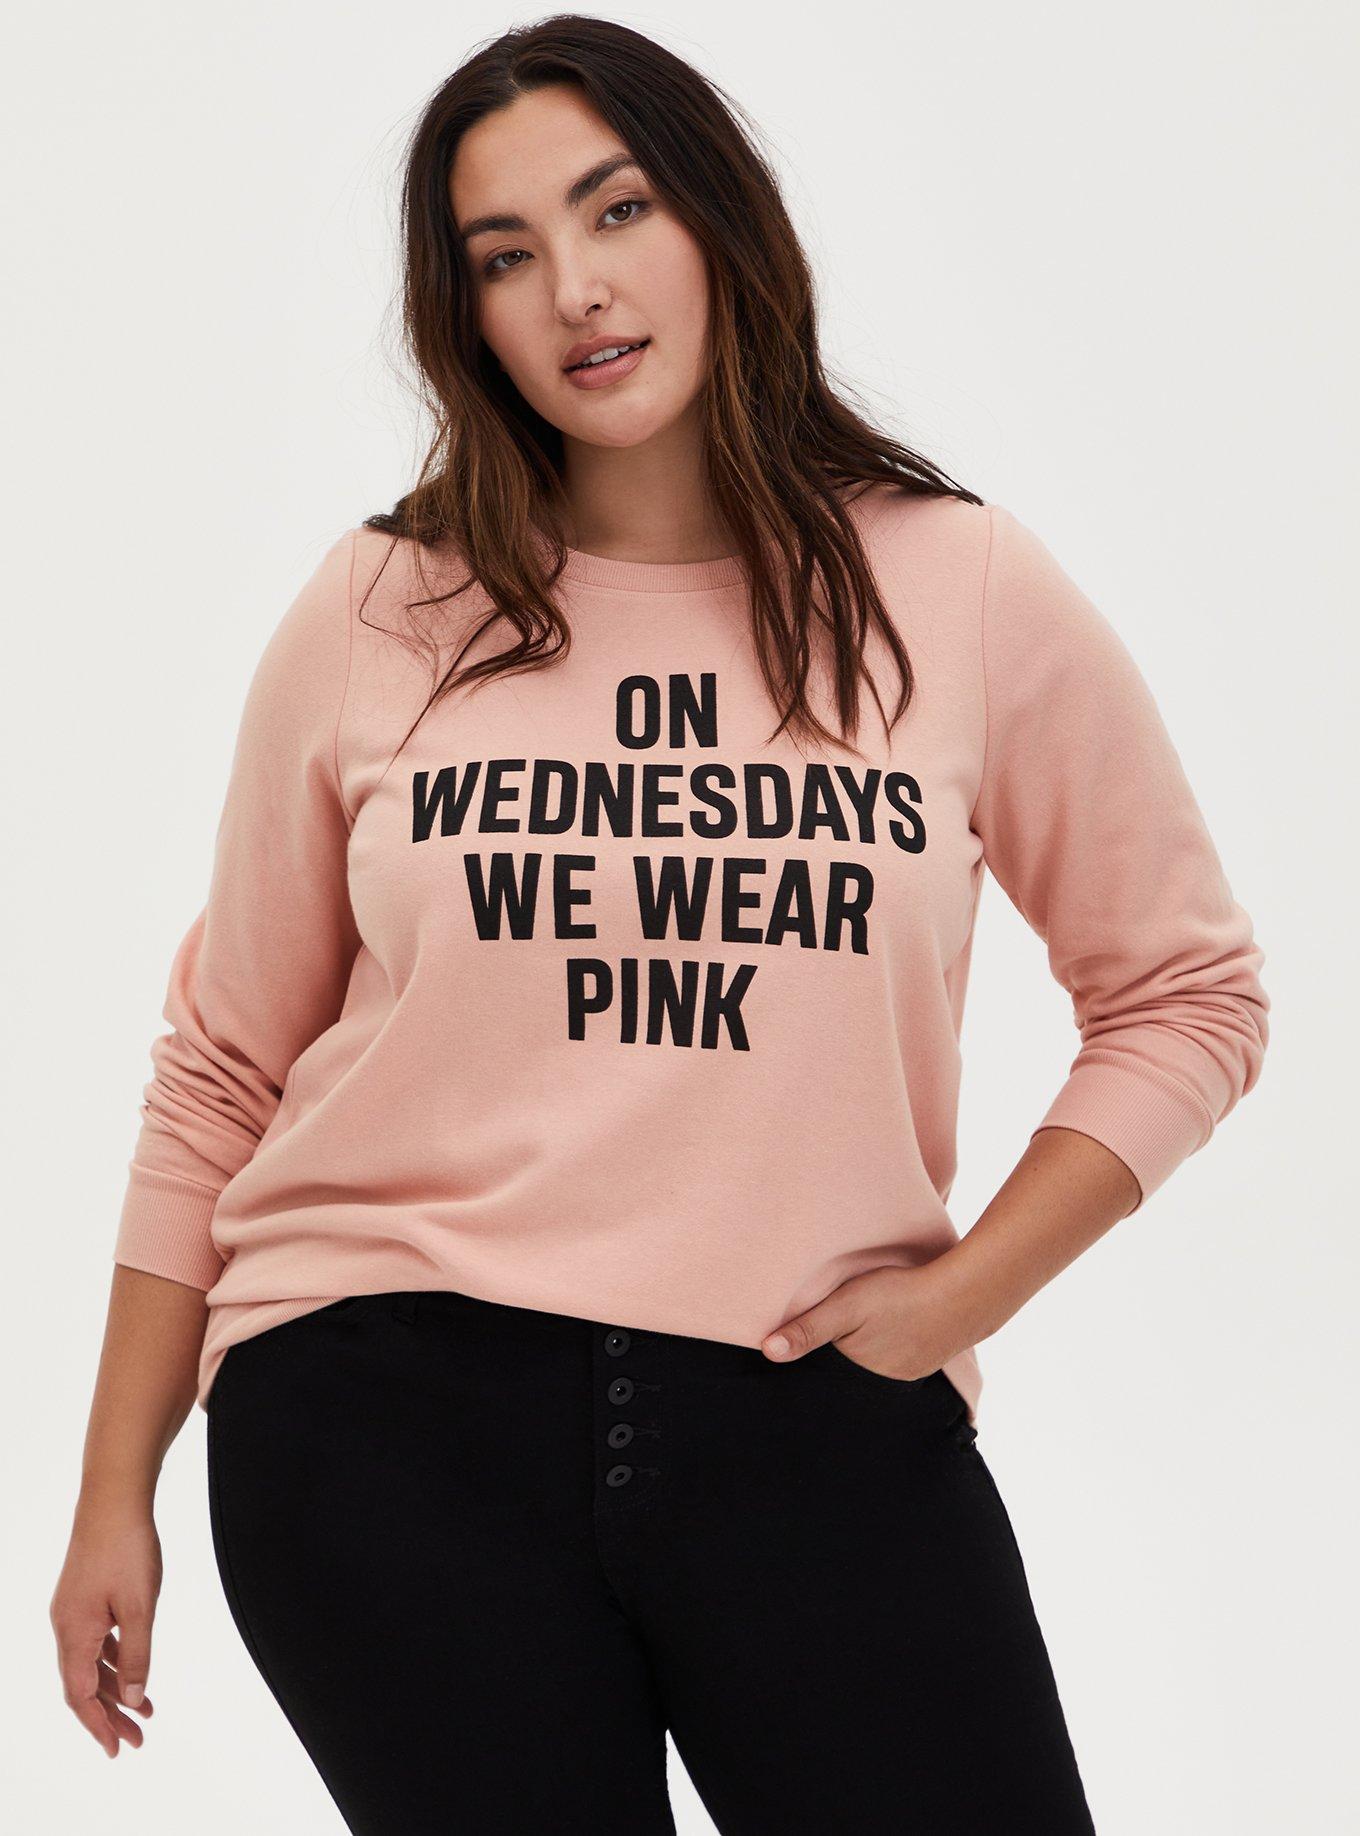 Mean Girls Crewneck Sweatshirt – Wearecrimsonclover